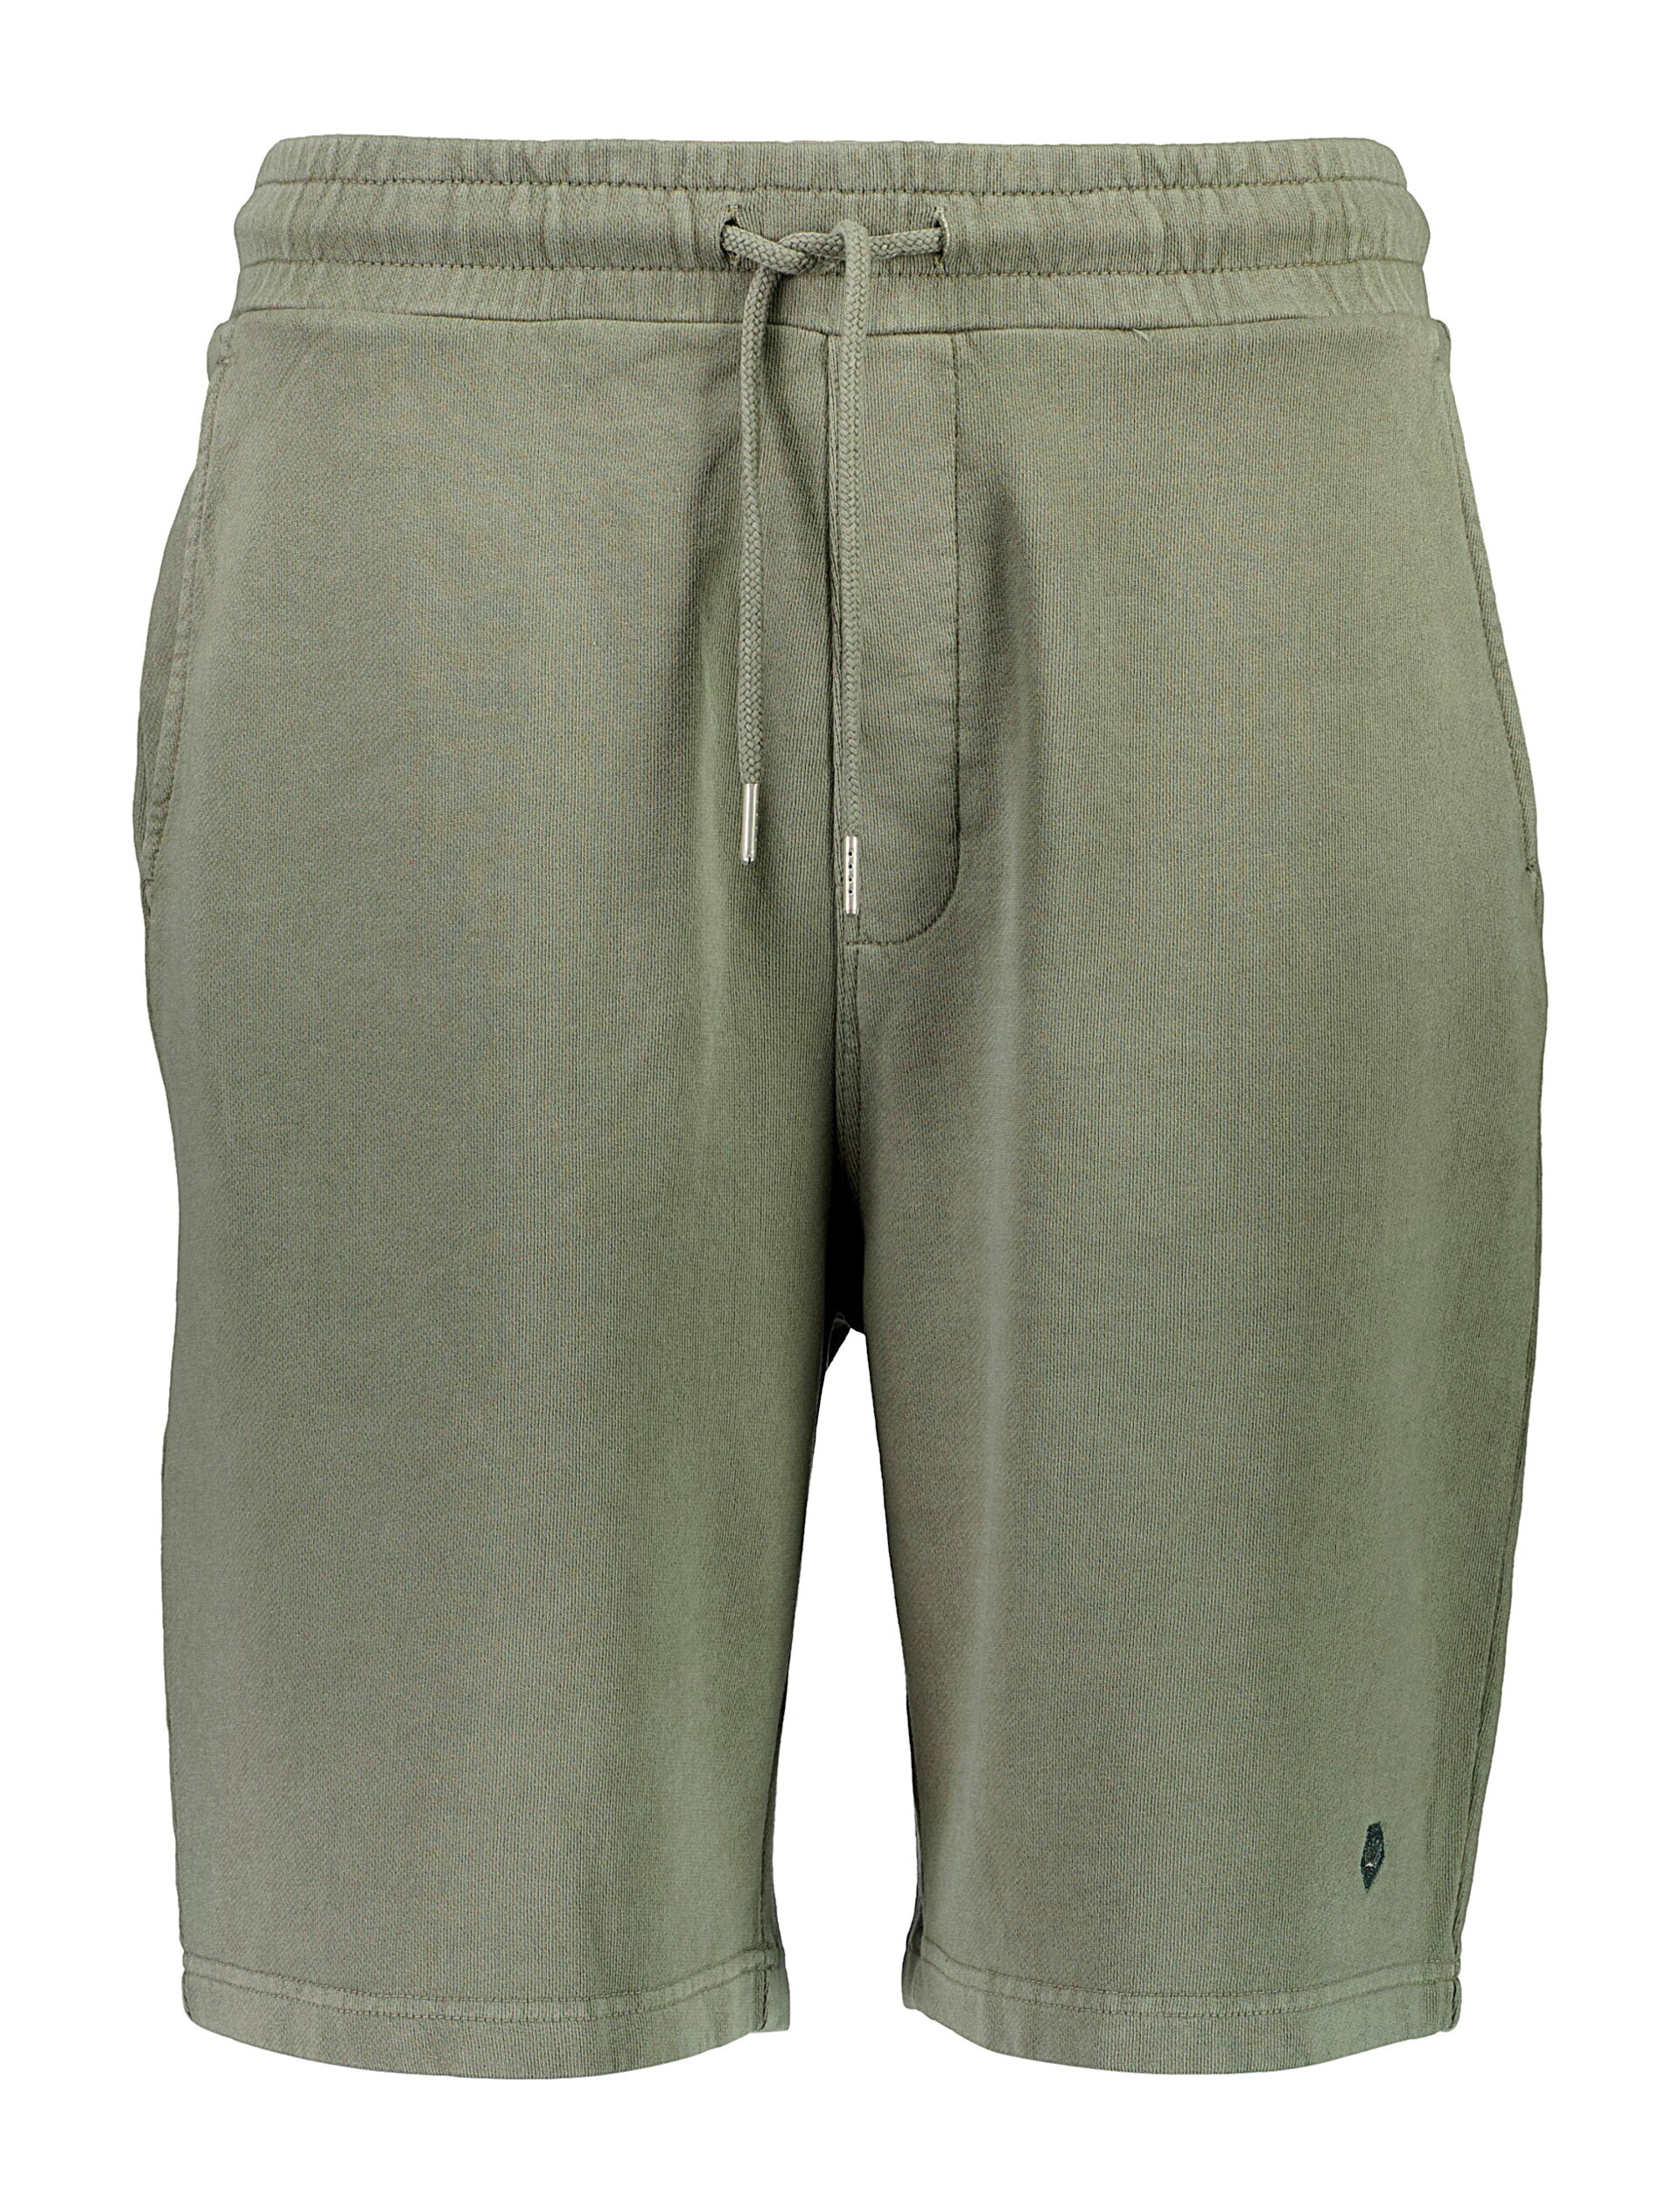 Junk de Luxe Casual shorts grey / dusty grey